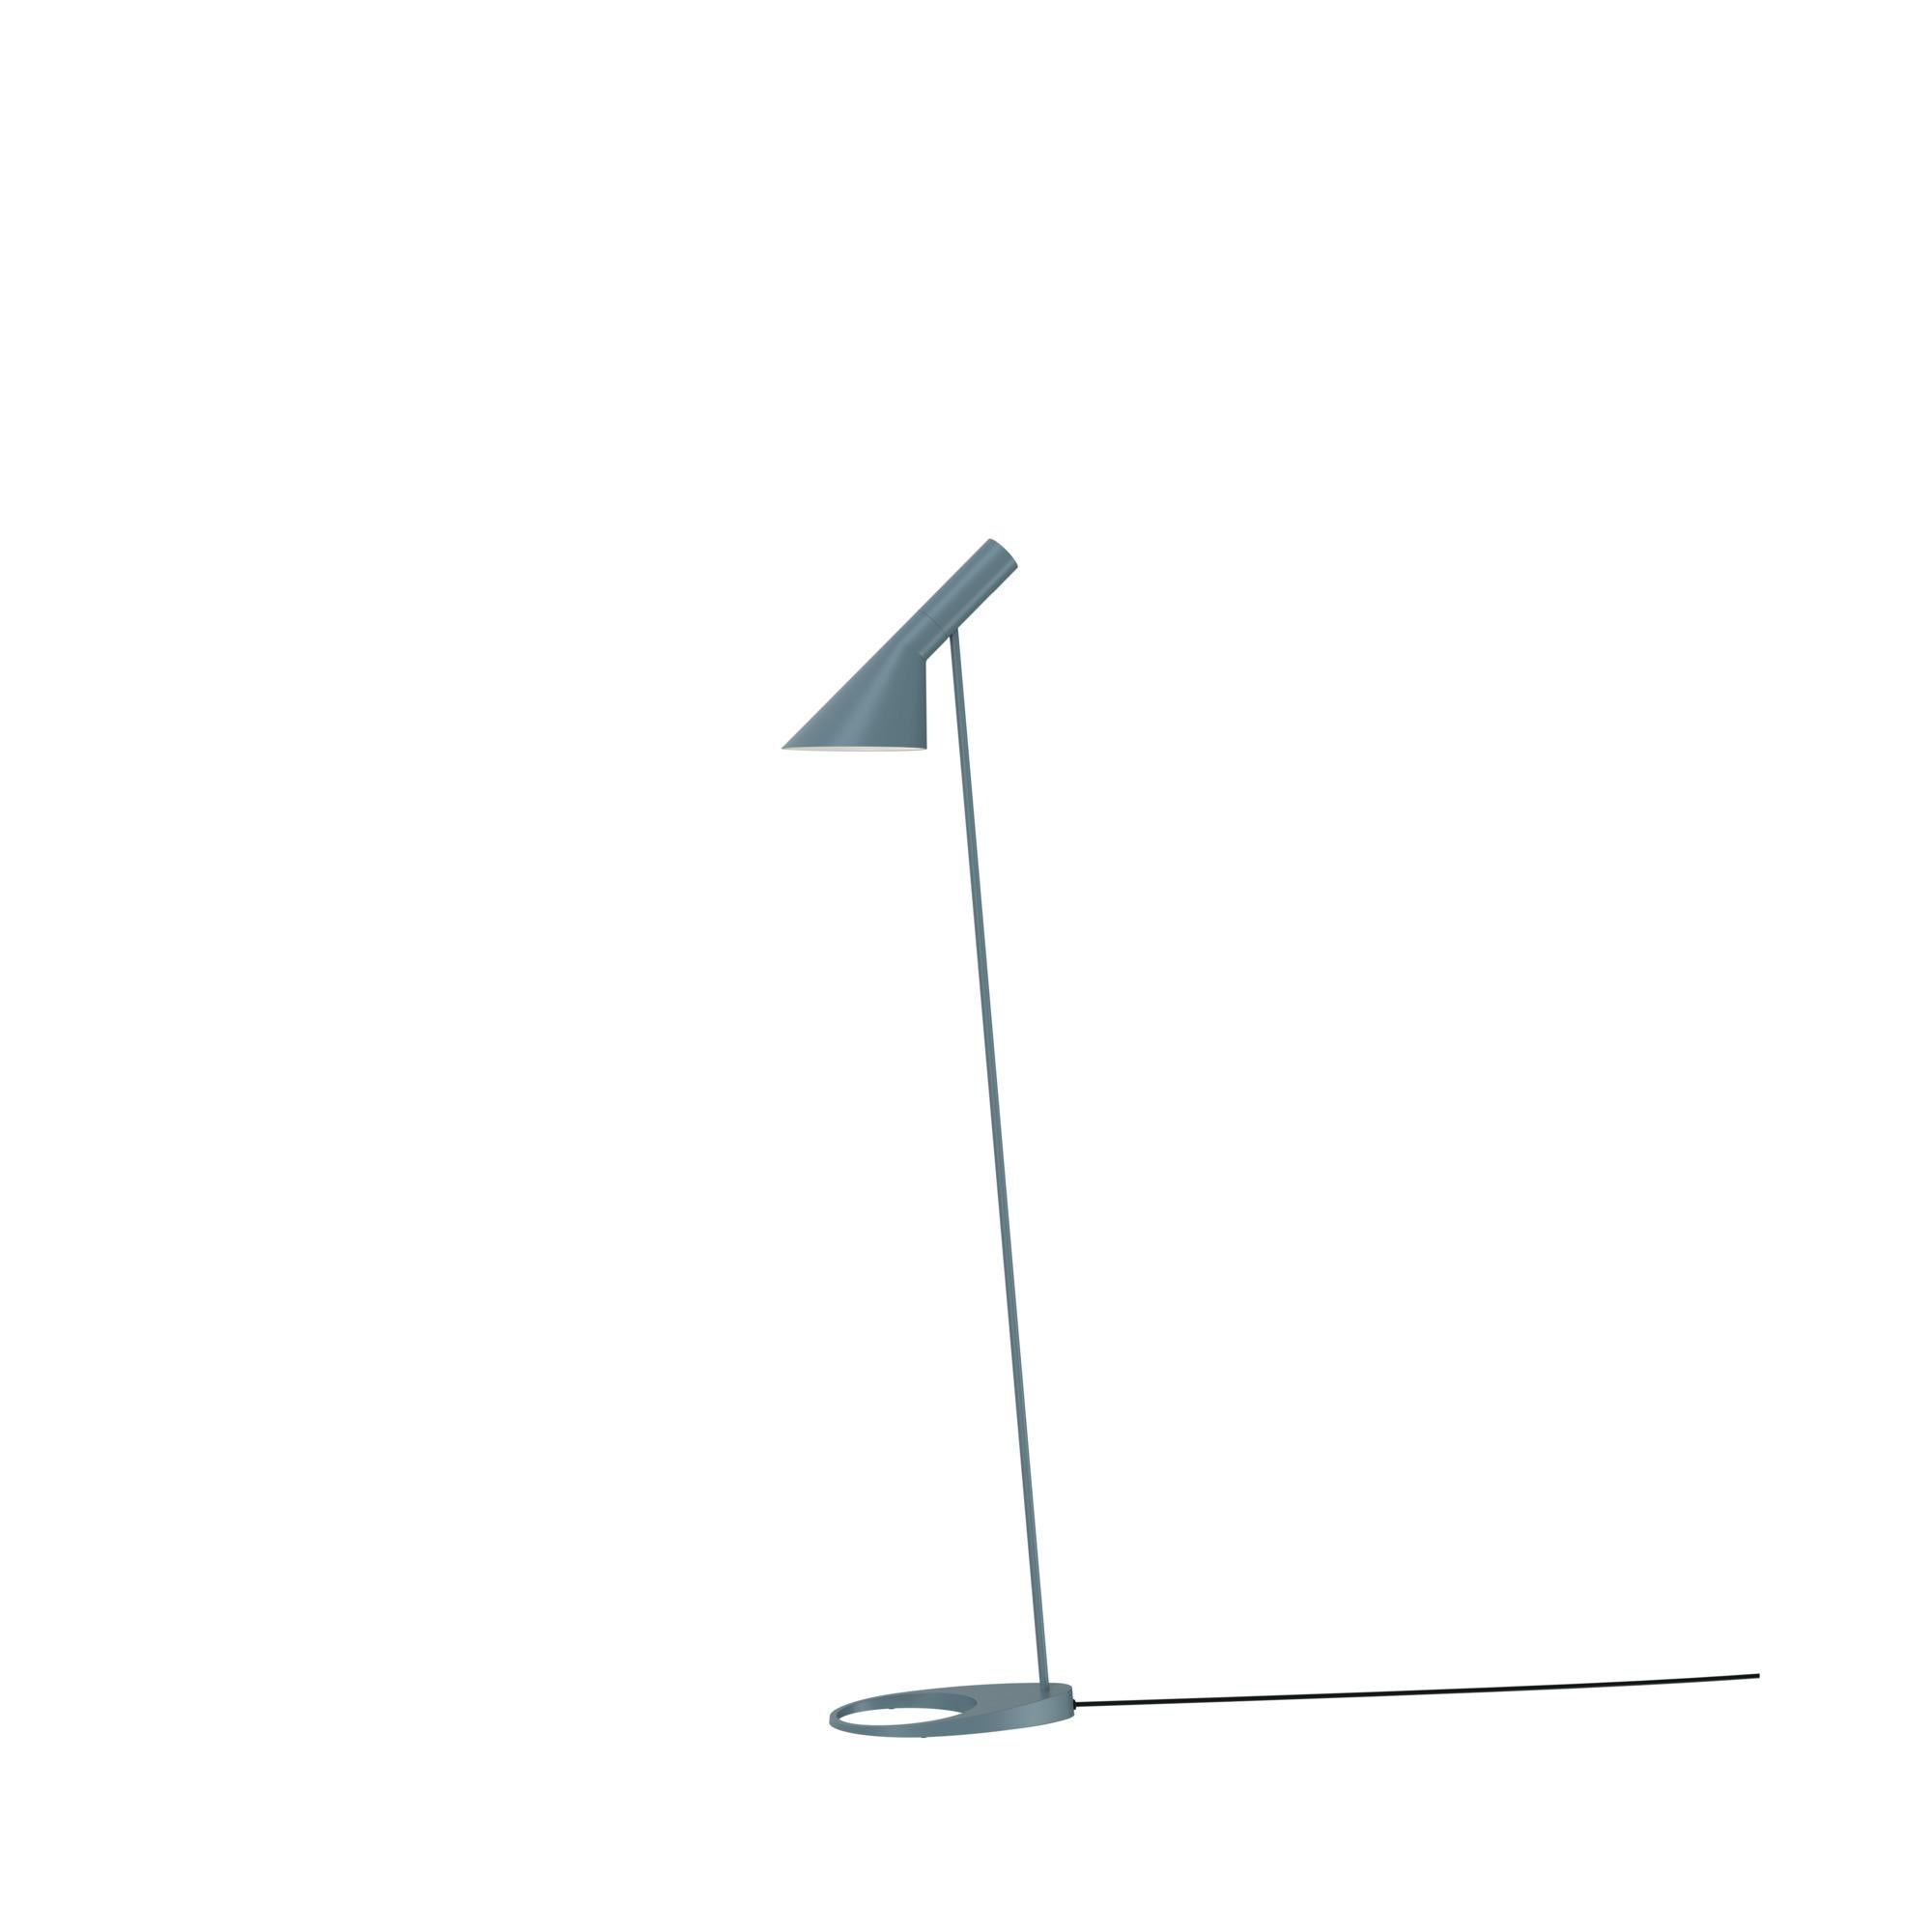 Arne Jacobsen AJ Floor Lamp in Stainless Steel for Louis Poulsen For Sale 8